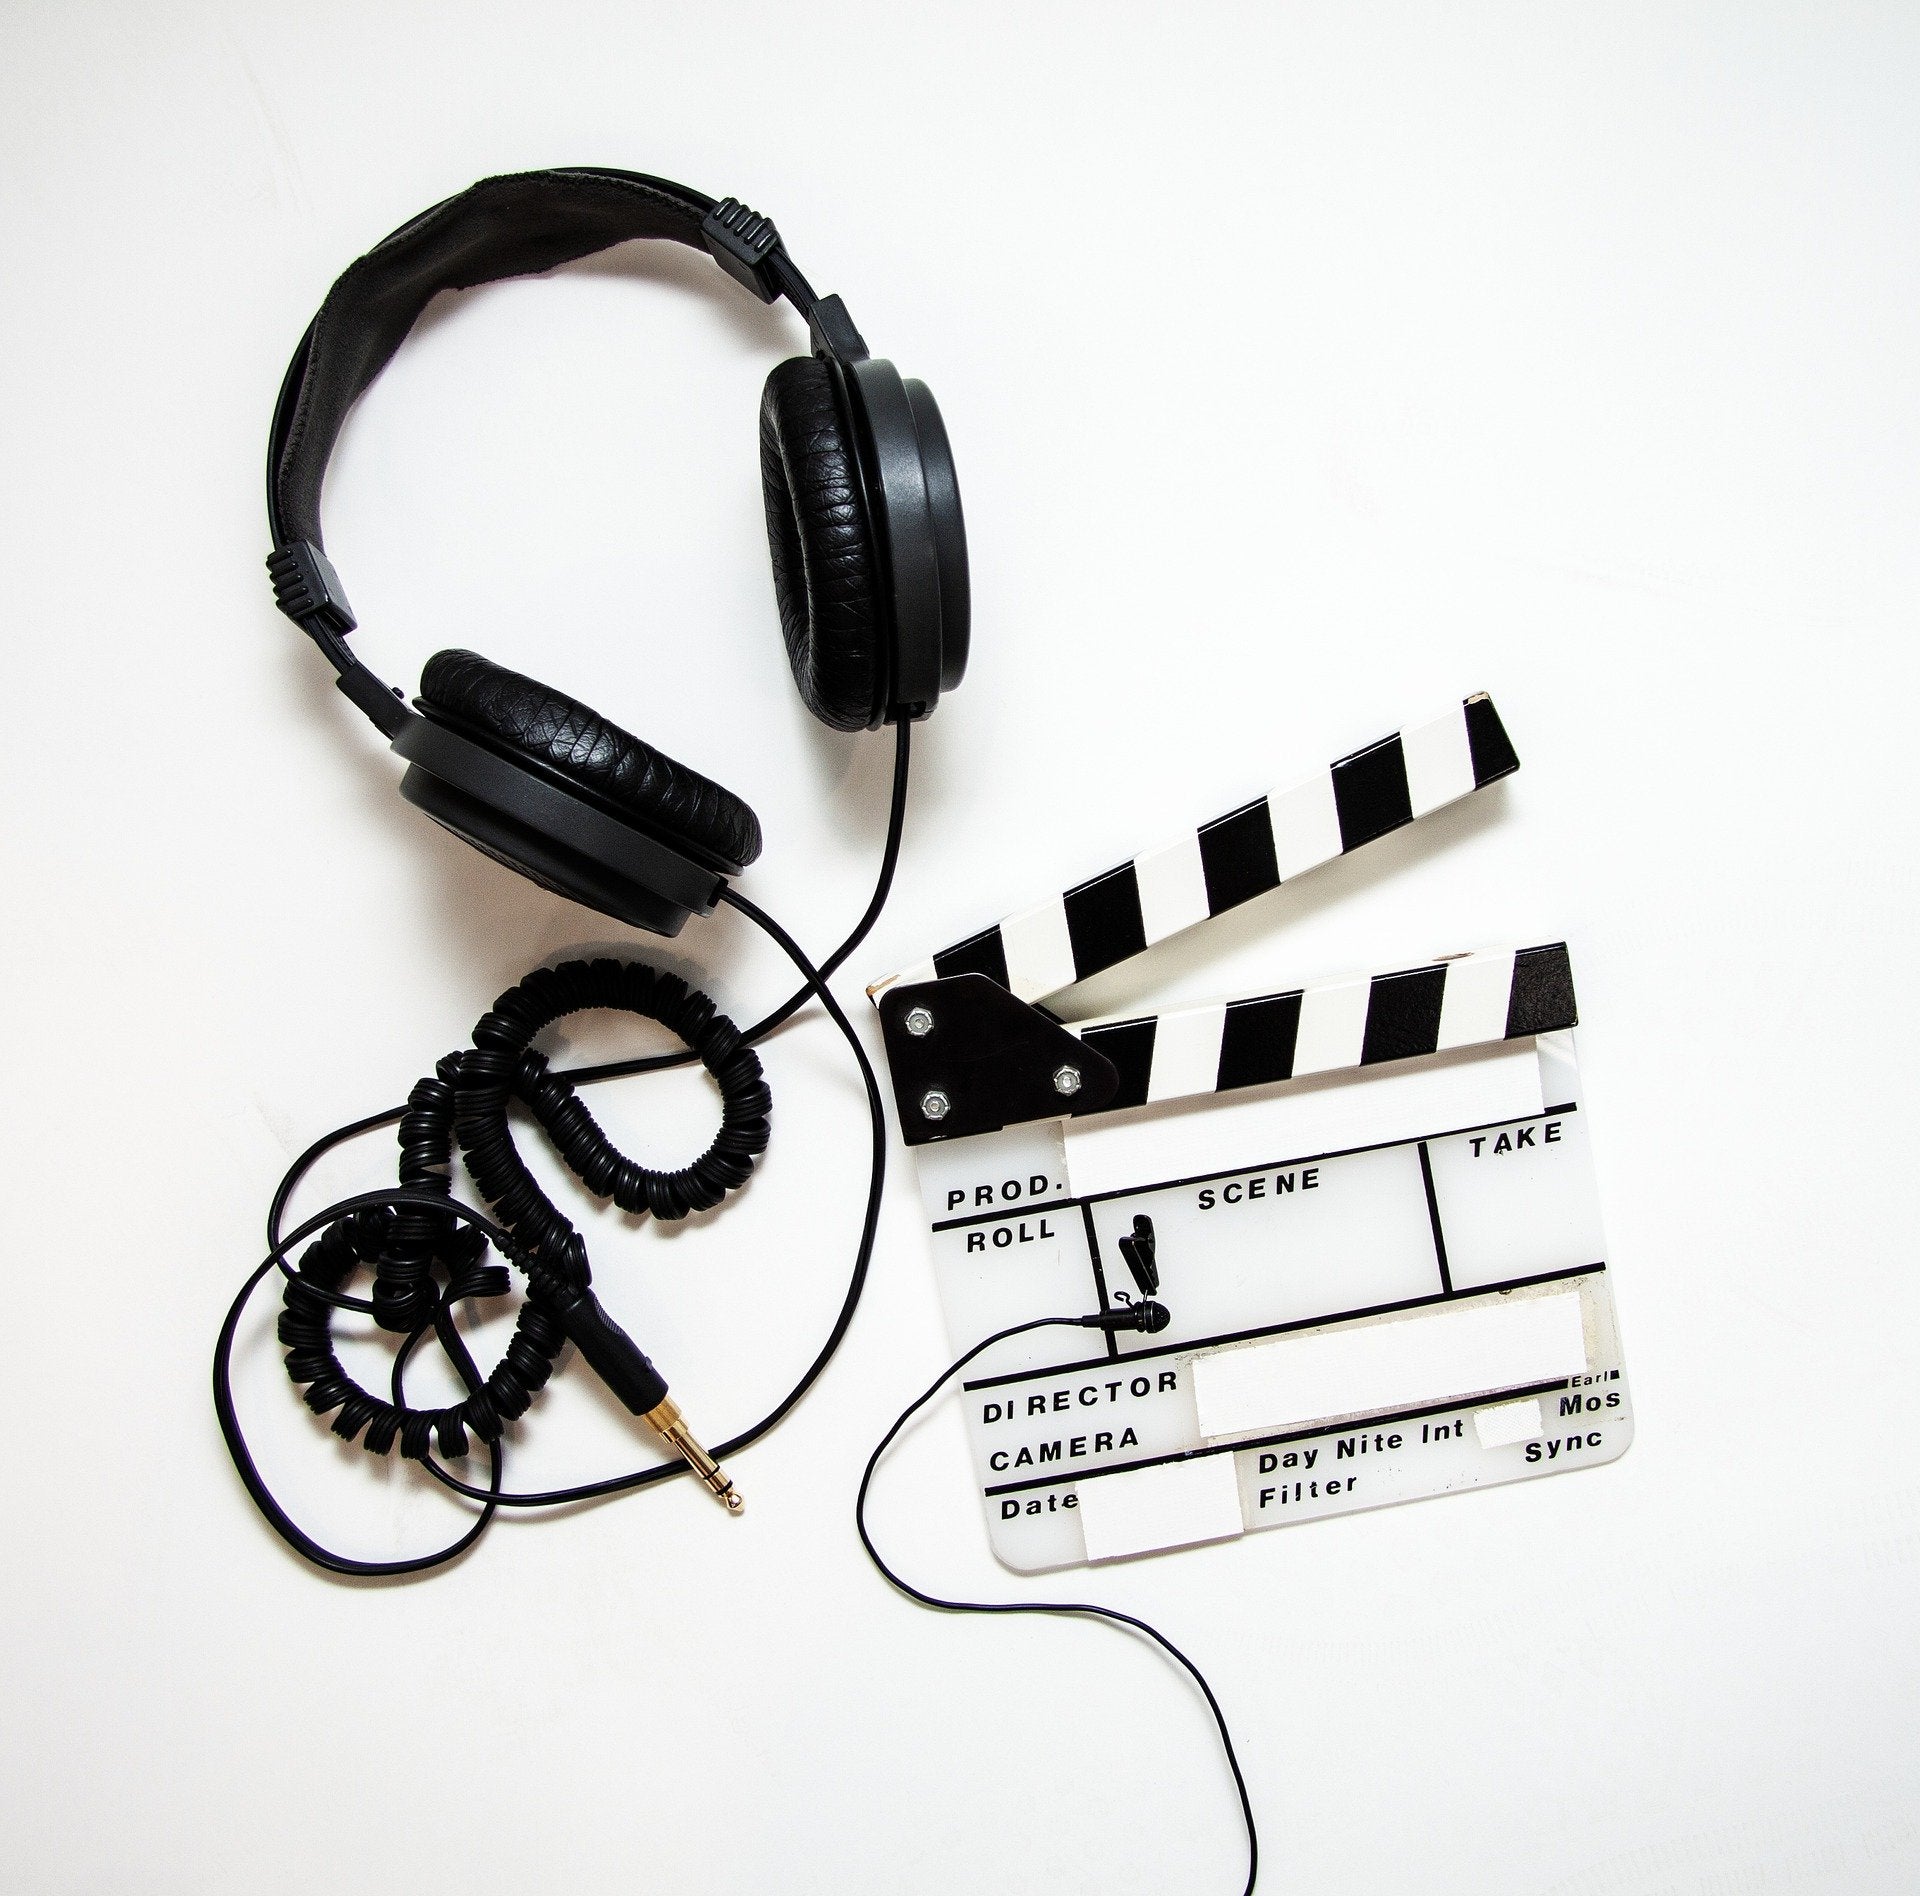 Microphone Setup- Image Courtesy of Pixabay.